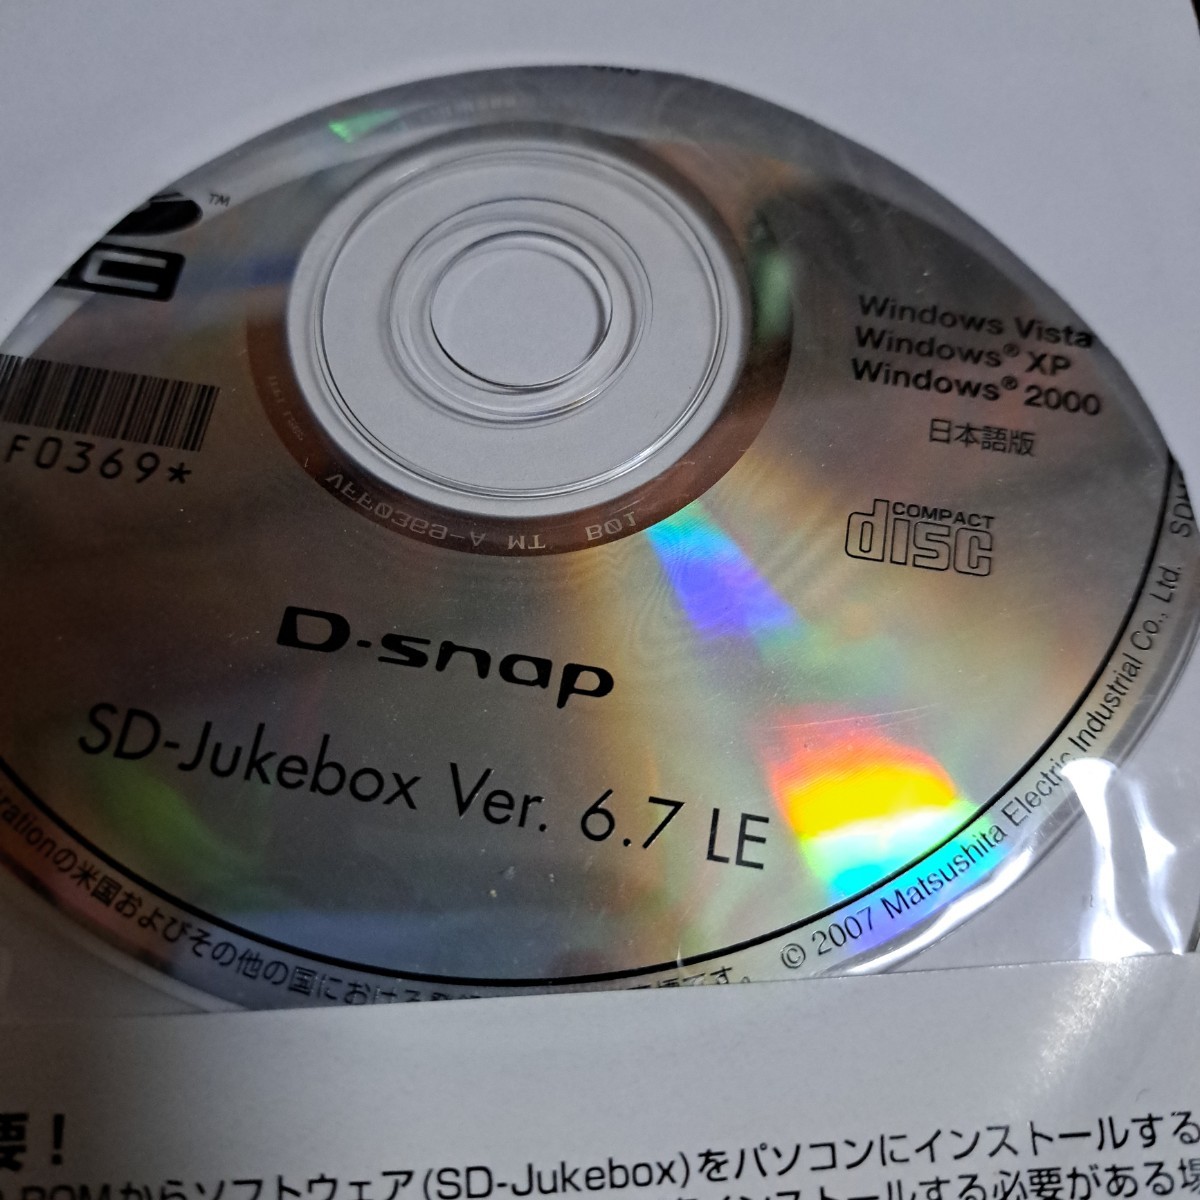 パナソニック　Panasonic　D-snap SD-jukebox Ver.6.7LE インストールCD-ROM VFF0369-B_画像3